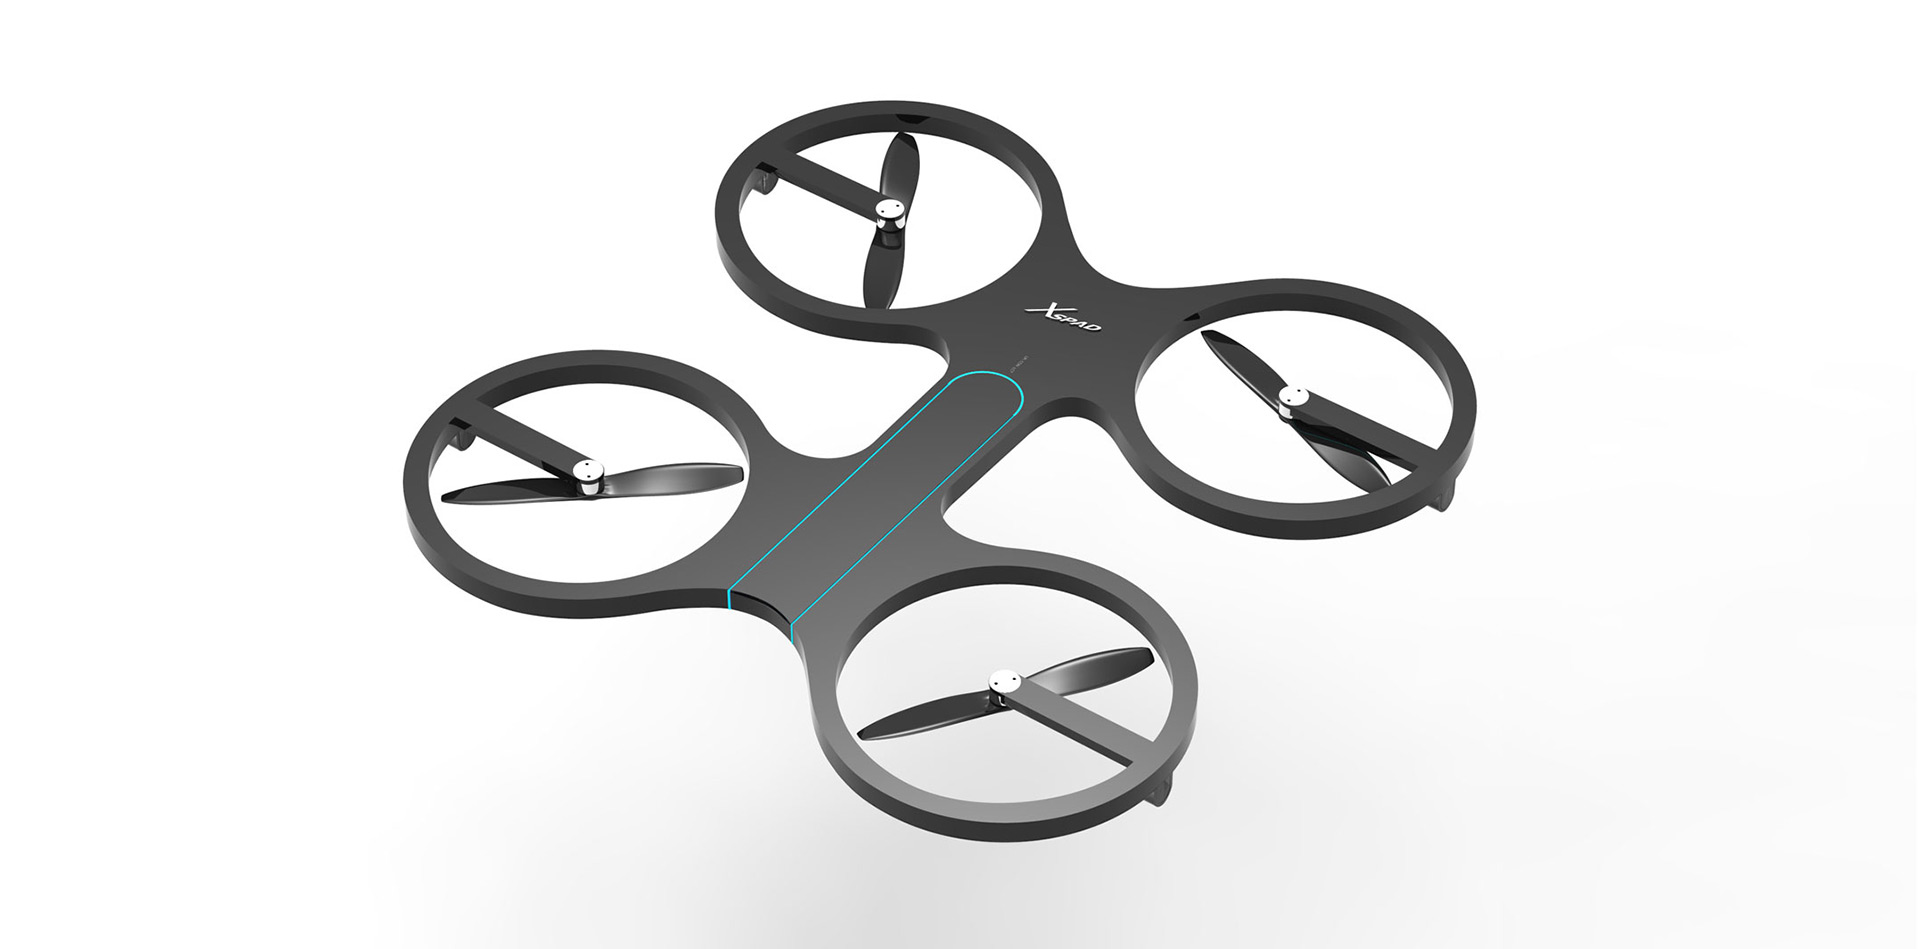 Xspeed drone